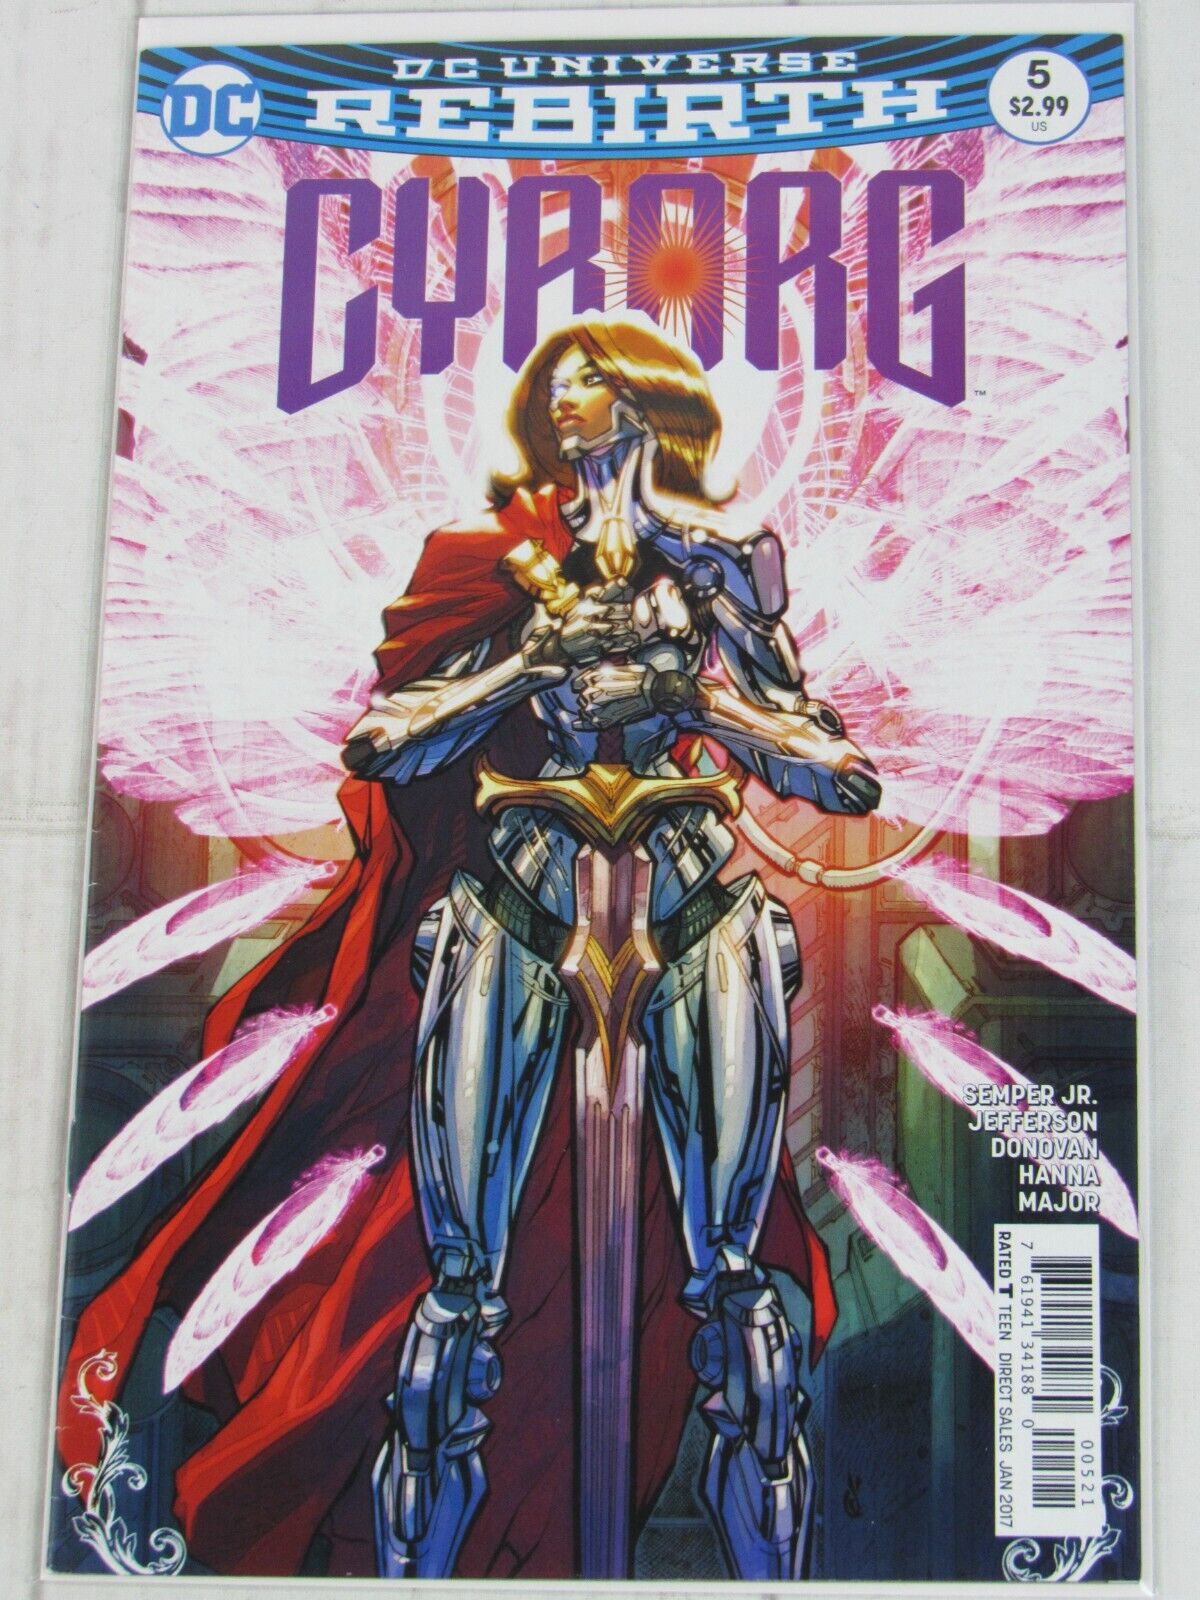 Cyborg #5B Jan. 2017 DC Comics Carlos DAnda Variant